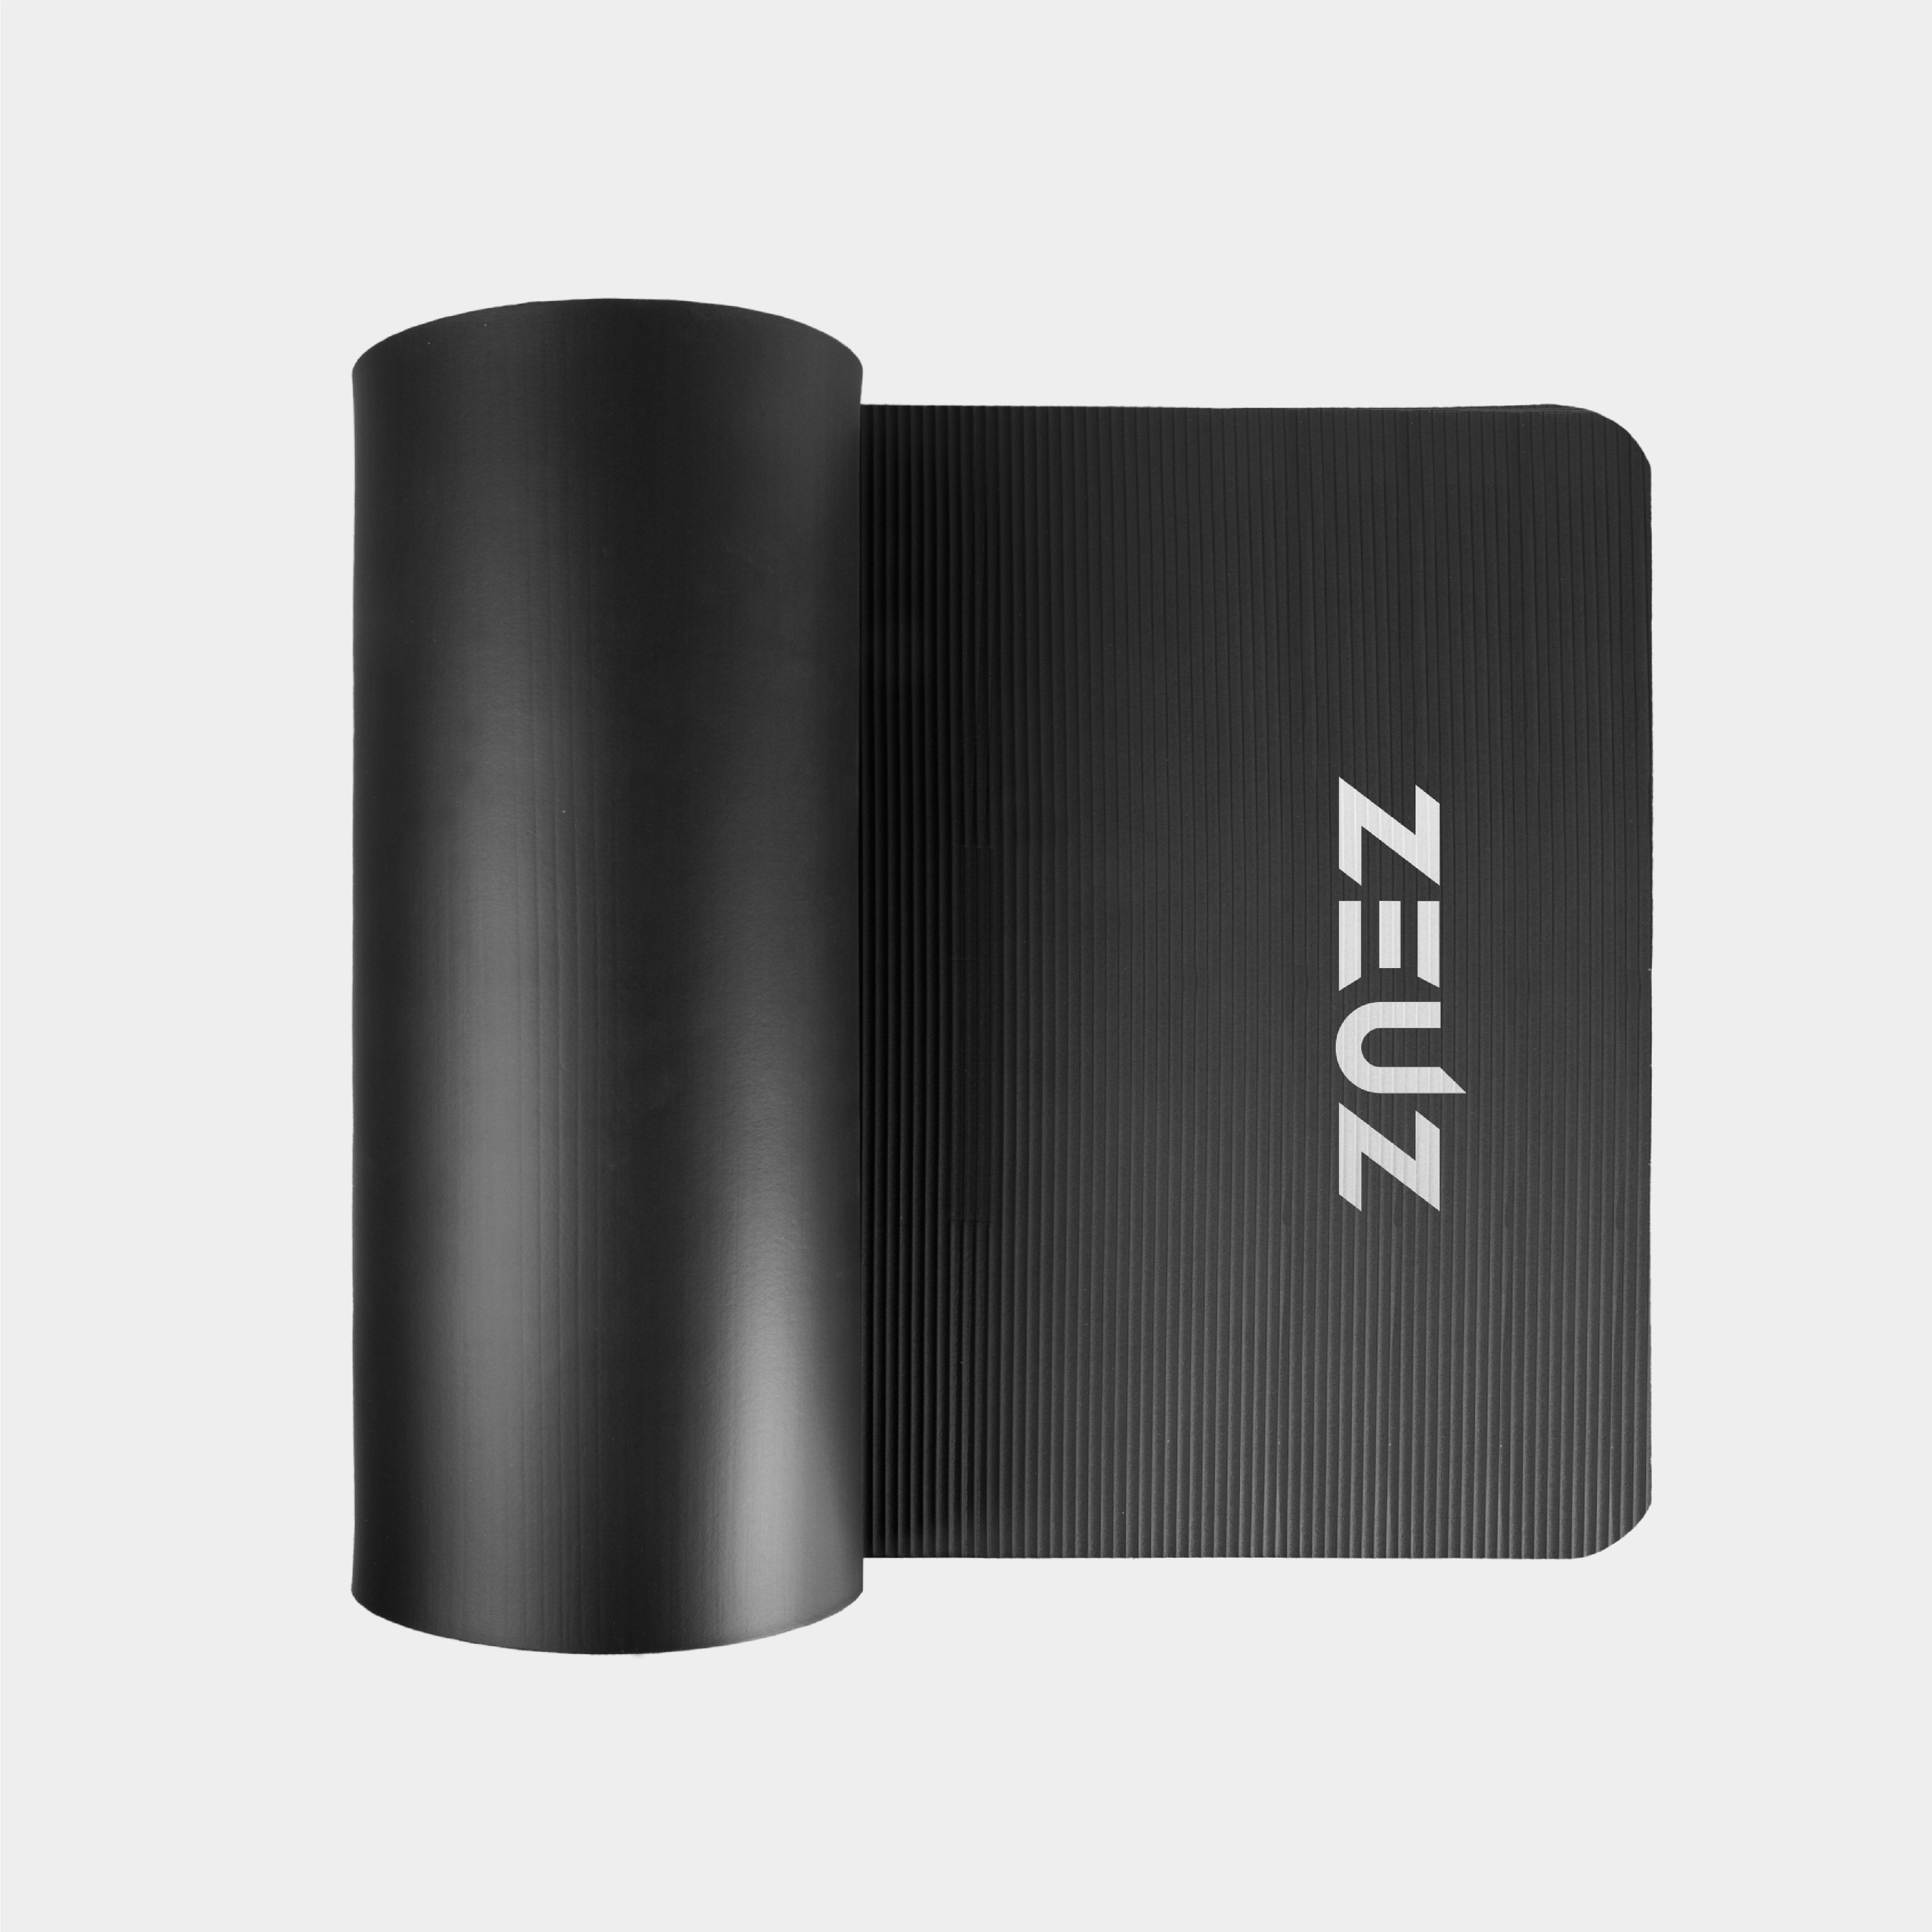 ZEUZ Yoga, Fitness, Sport Mat 180 x 60 x 1,5 CM - Incl. Carrier Bag - Black